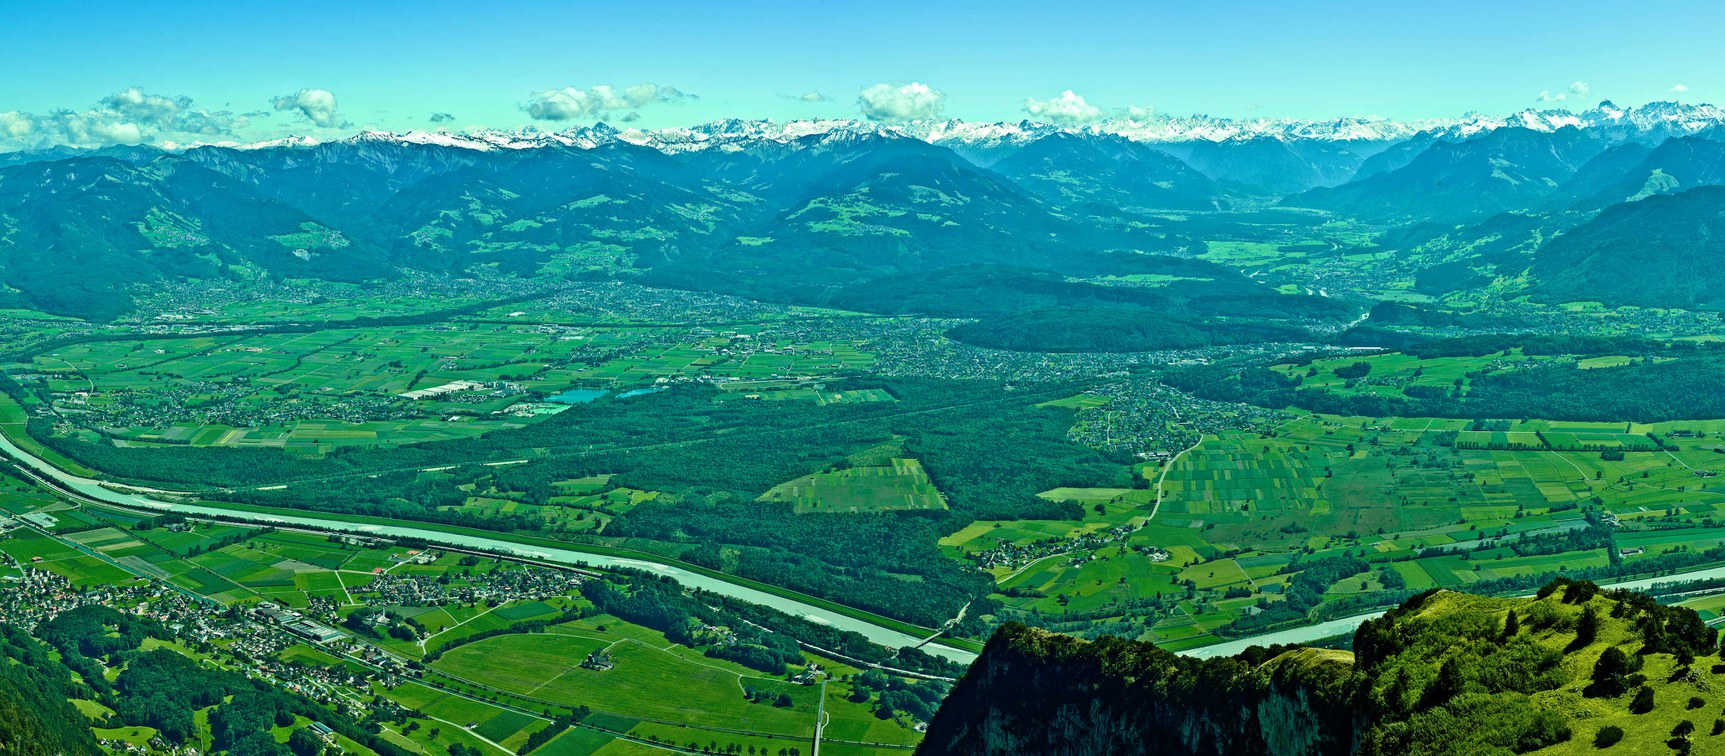 Stadt & Land, Berg & Tal: Die Region Vorderland-Feldkirch zeichnet sich mit ihren 13 Gemeinden durch eine außerordentlich große Vielfalt aus. Hier finden Sie ein Live-Camera Bild auf die gesamte Region und eine Regionsbeschreibung.